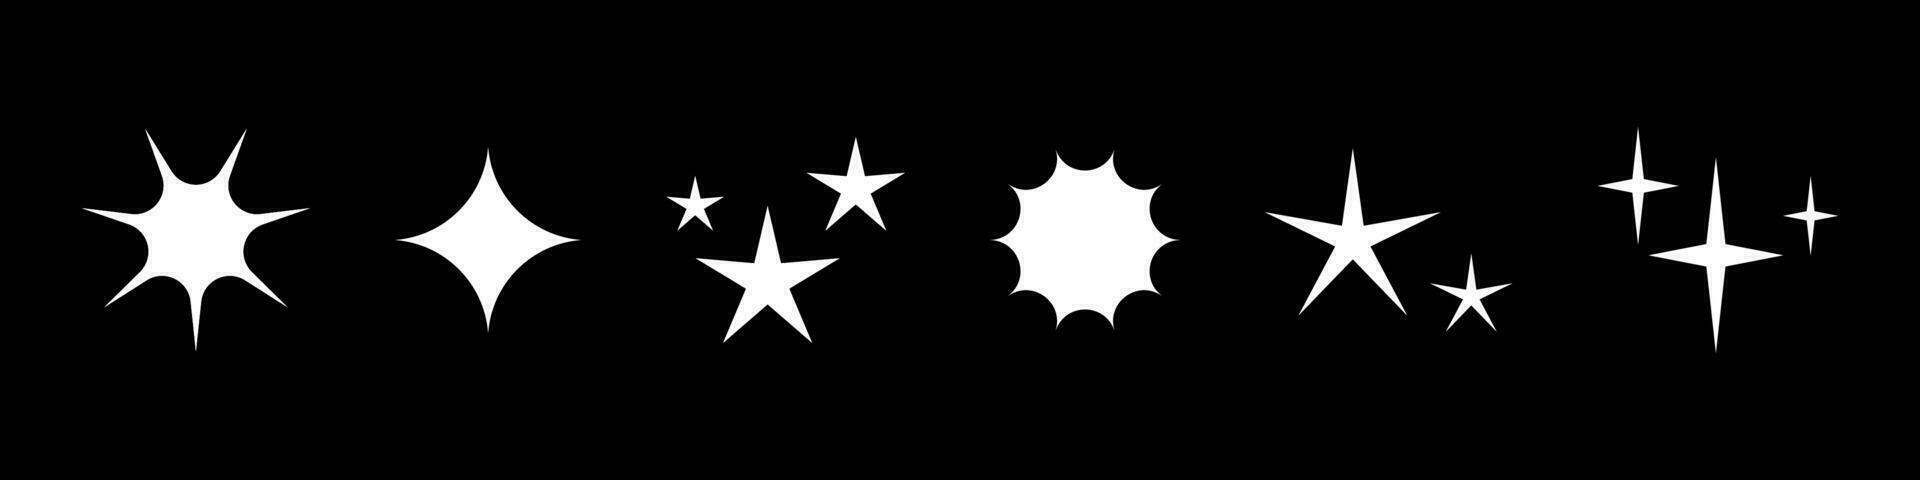 Vektor einstellen von futuristisch funkeln Symbole. Sammlung von Weiß Star Formen isoliert auf schwarz. abstrakt Zeichen. abstrakt cool scheinen 90er Jahre Elemente.